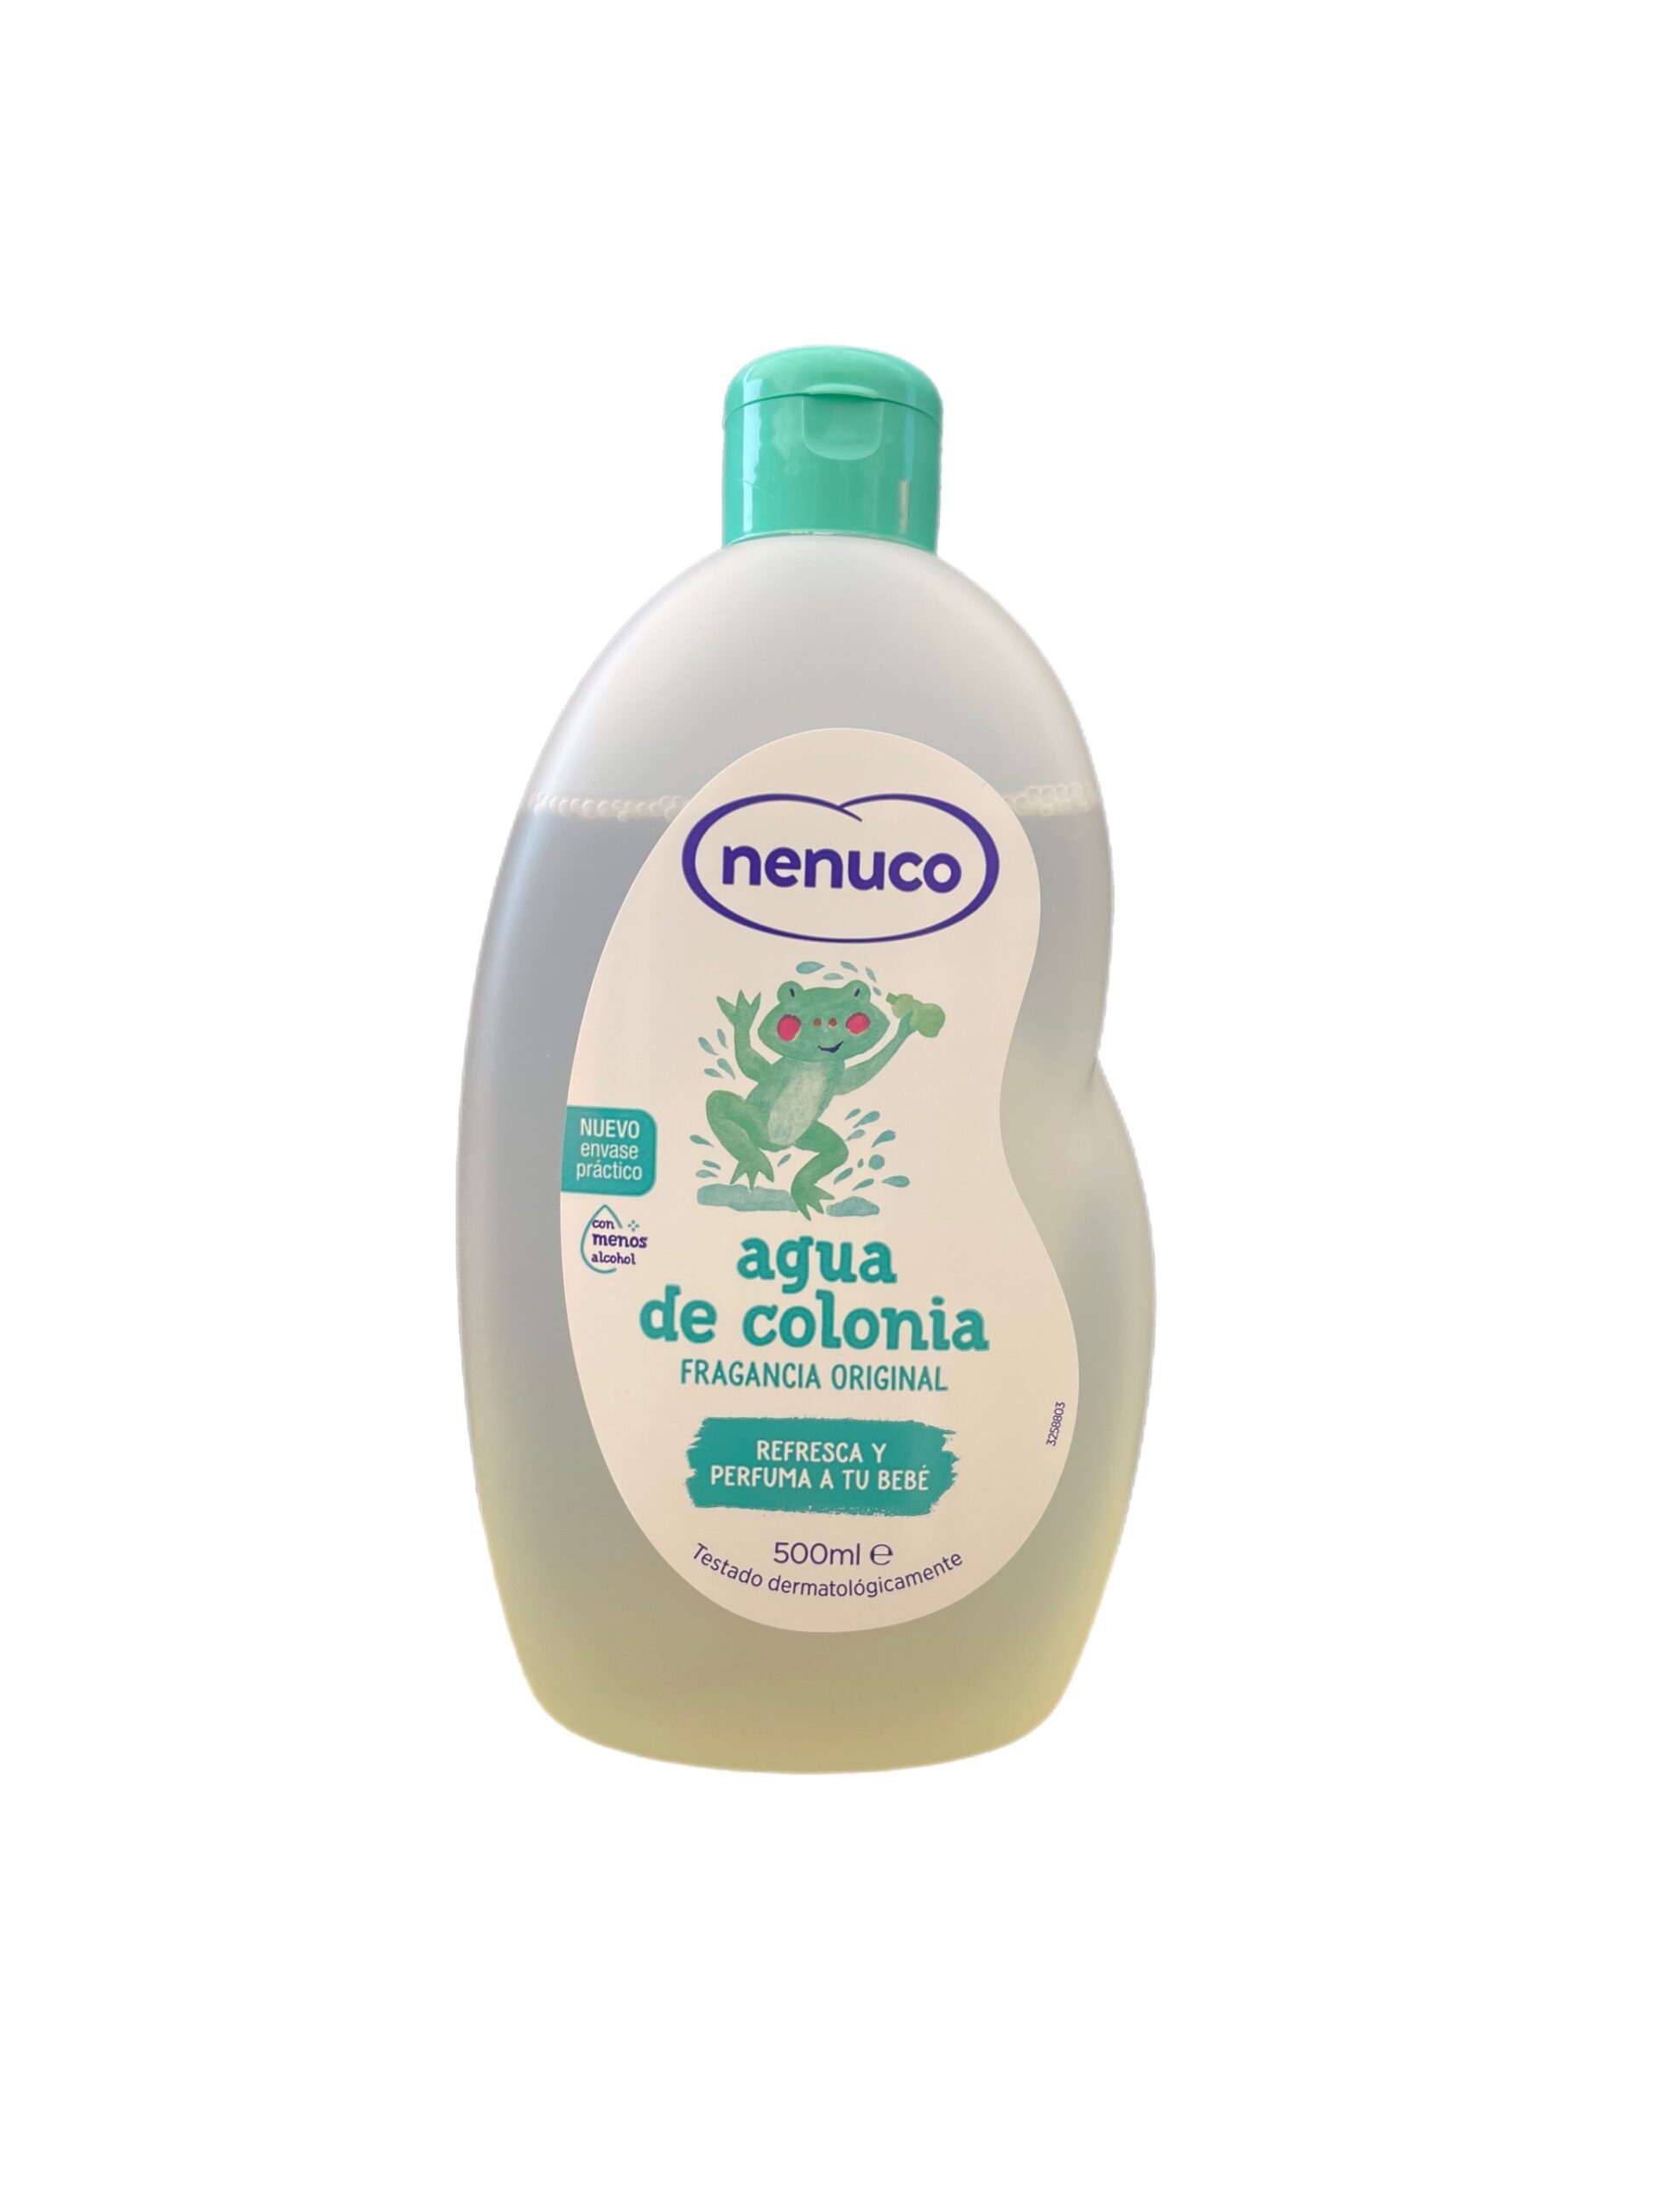 Agua de colonia infantil Nenuco bote 500 ml - Supermercados DIA